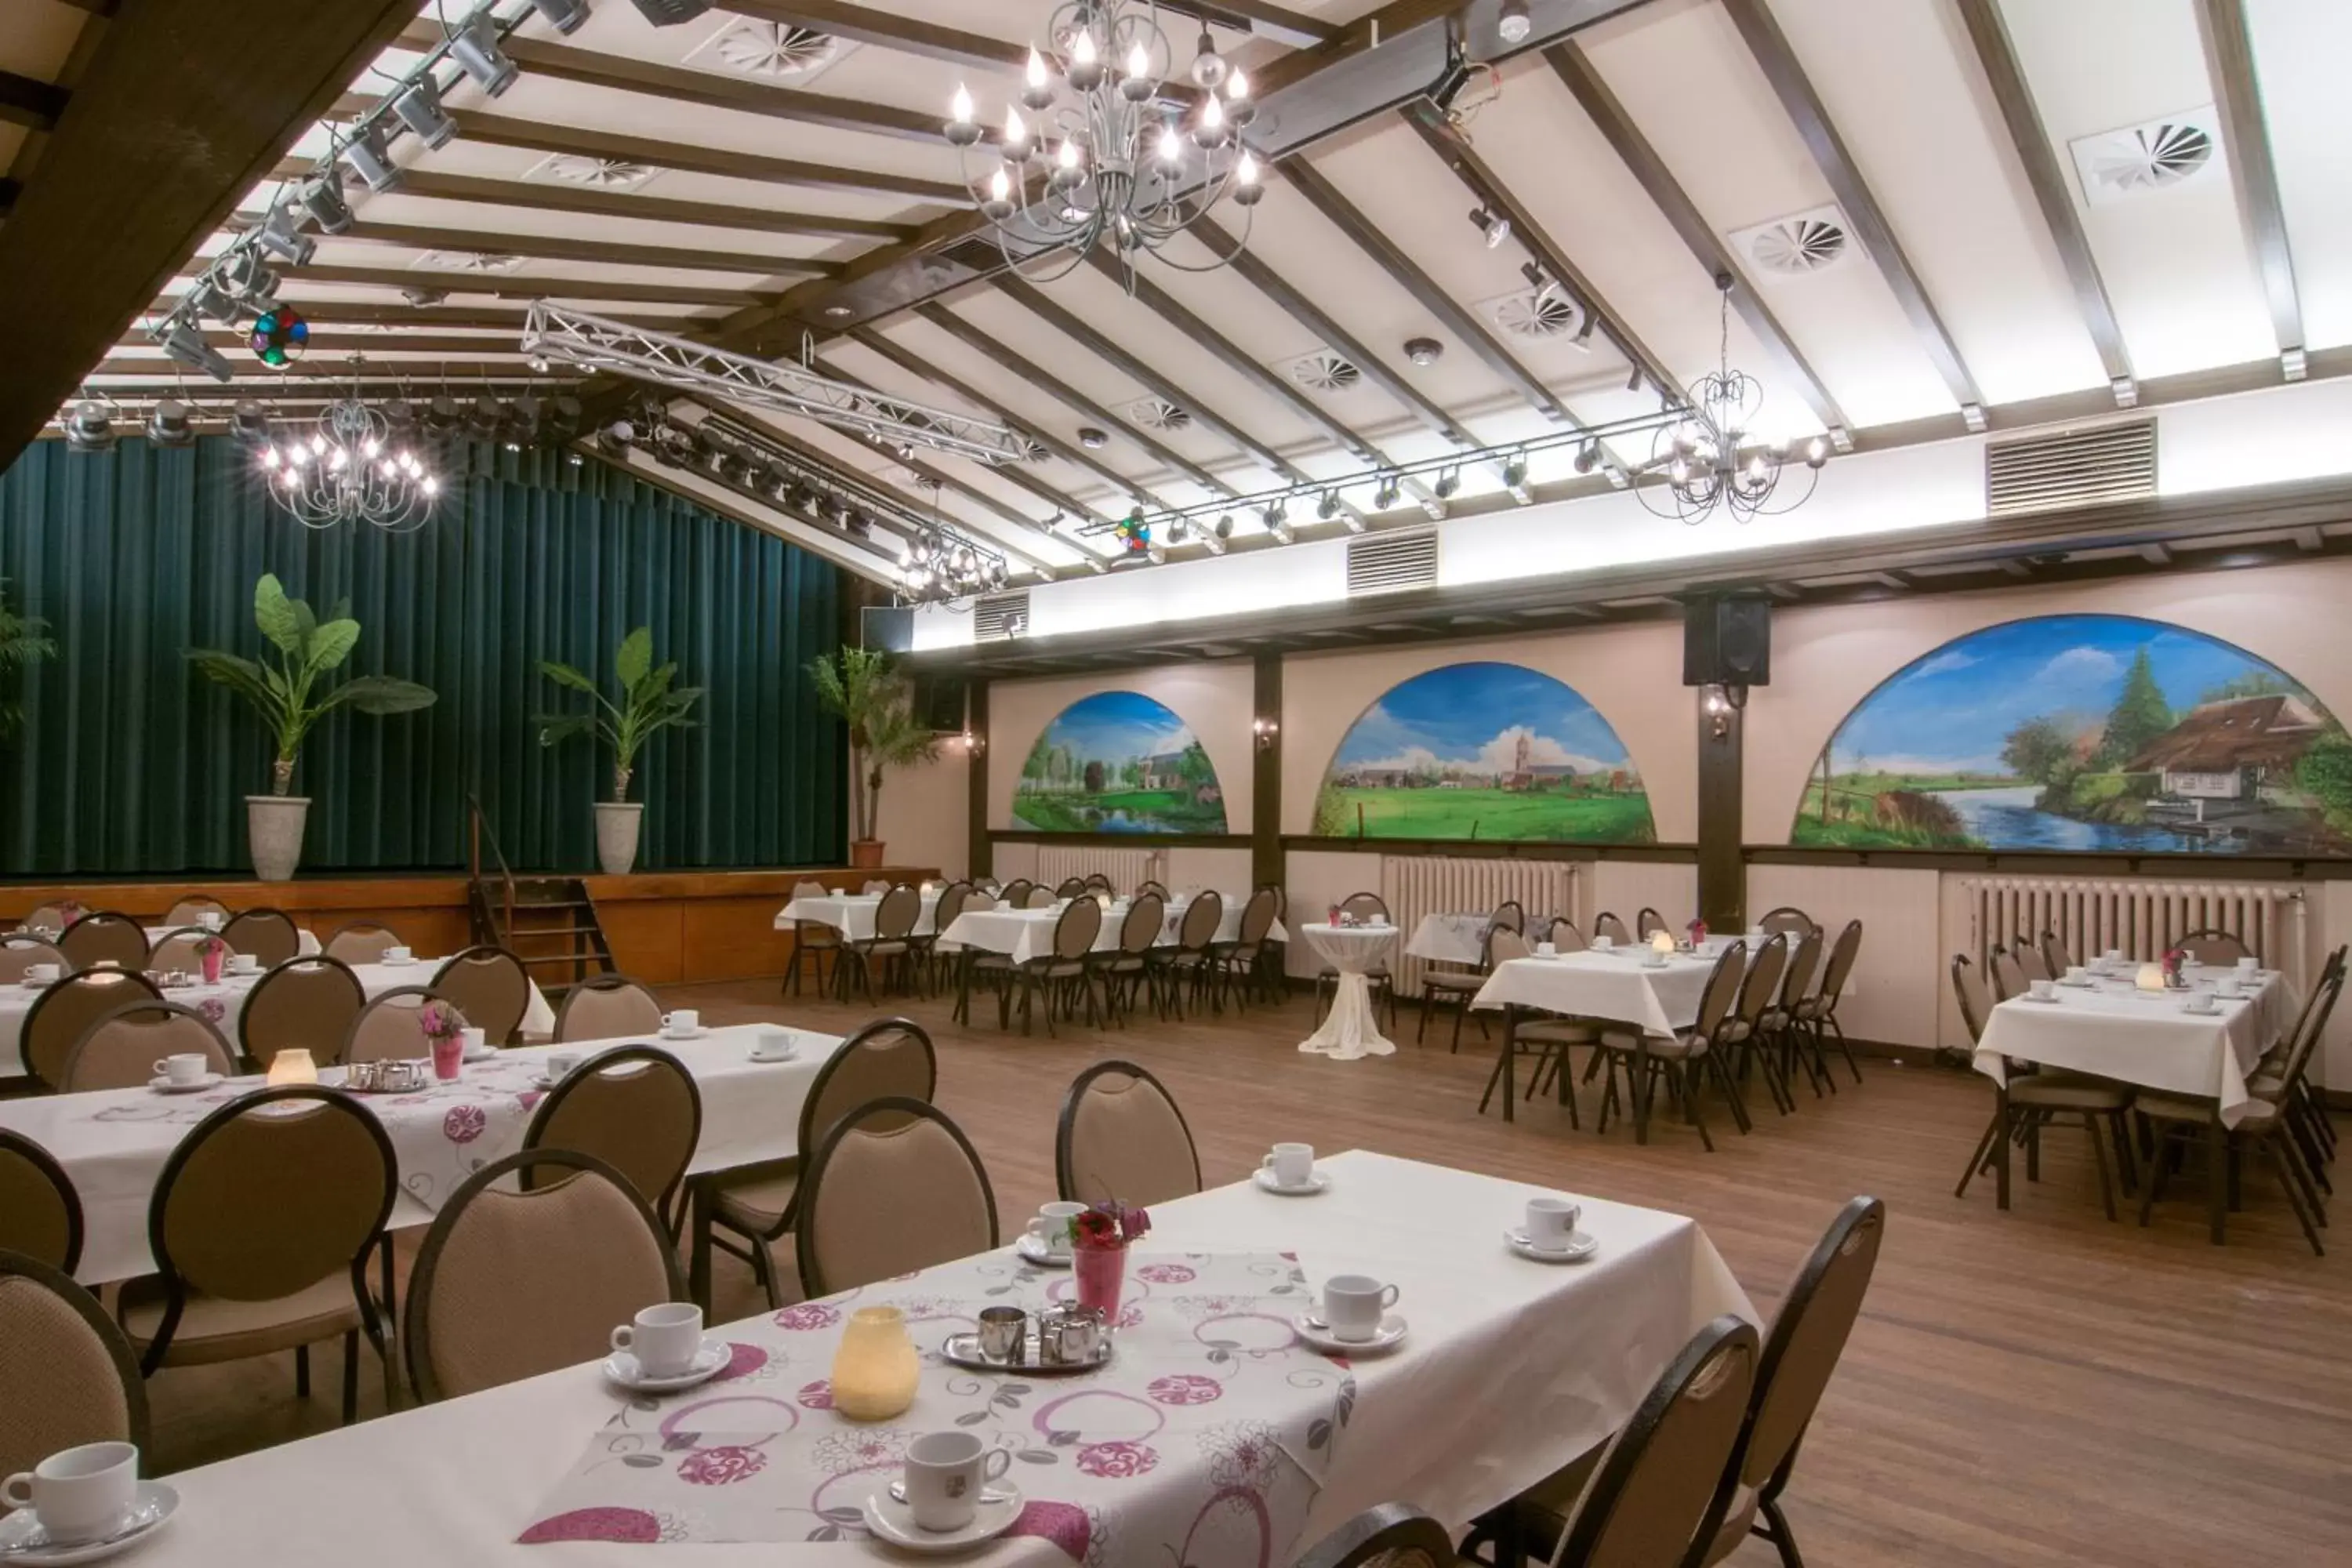 Banquet/Function facilities, Restaurant/Places to Eat in Het Wapen van Elst